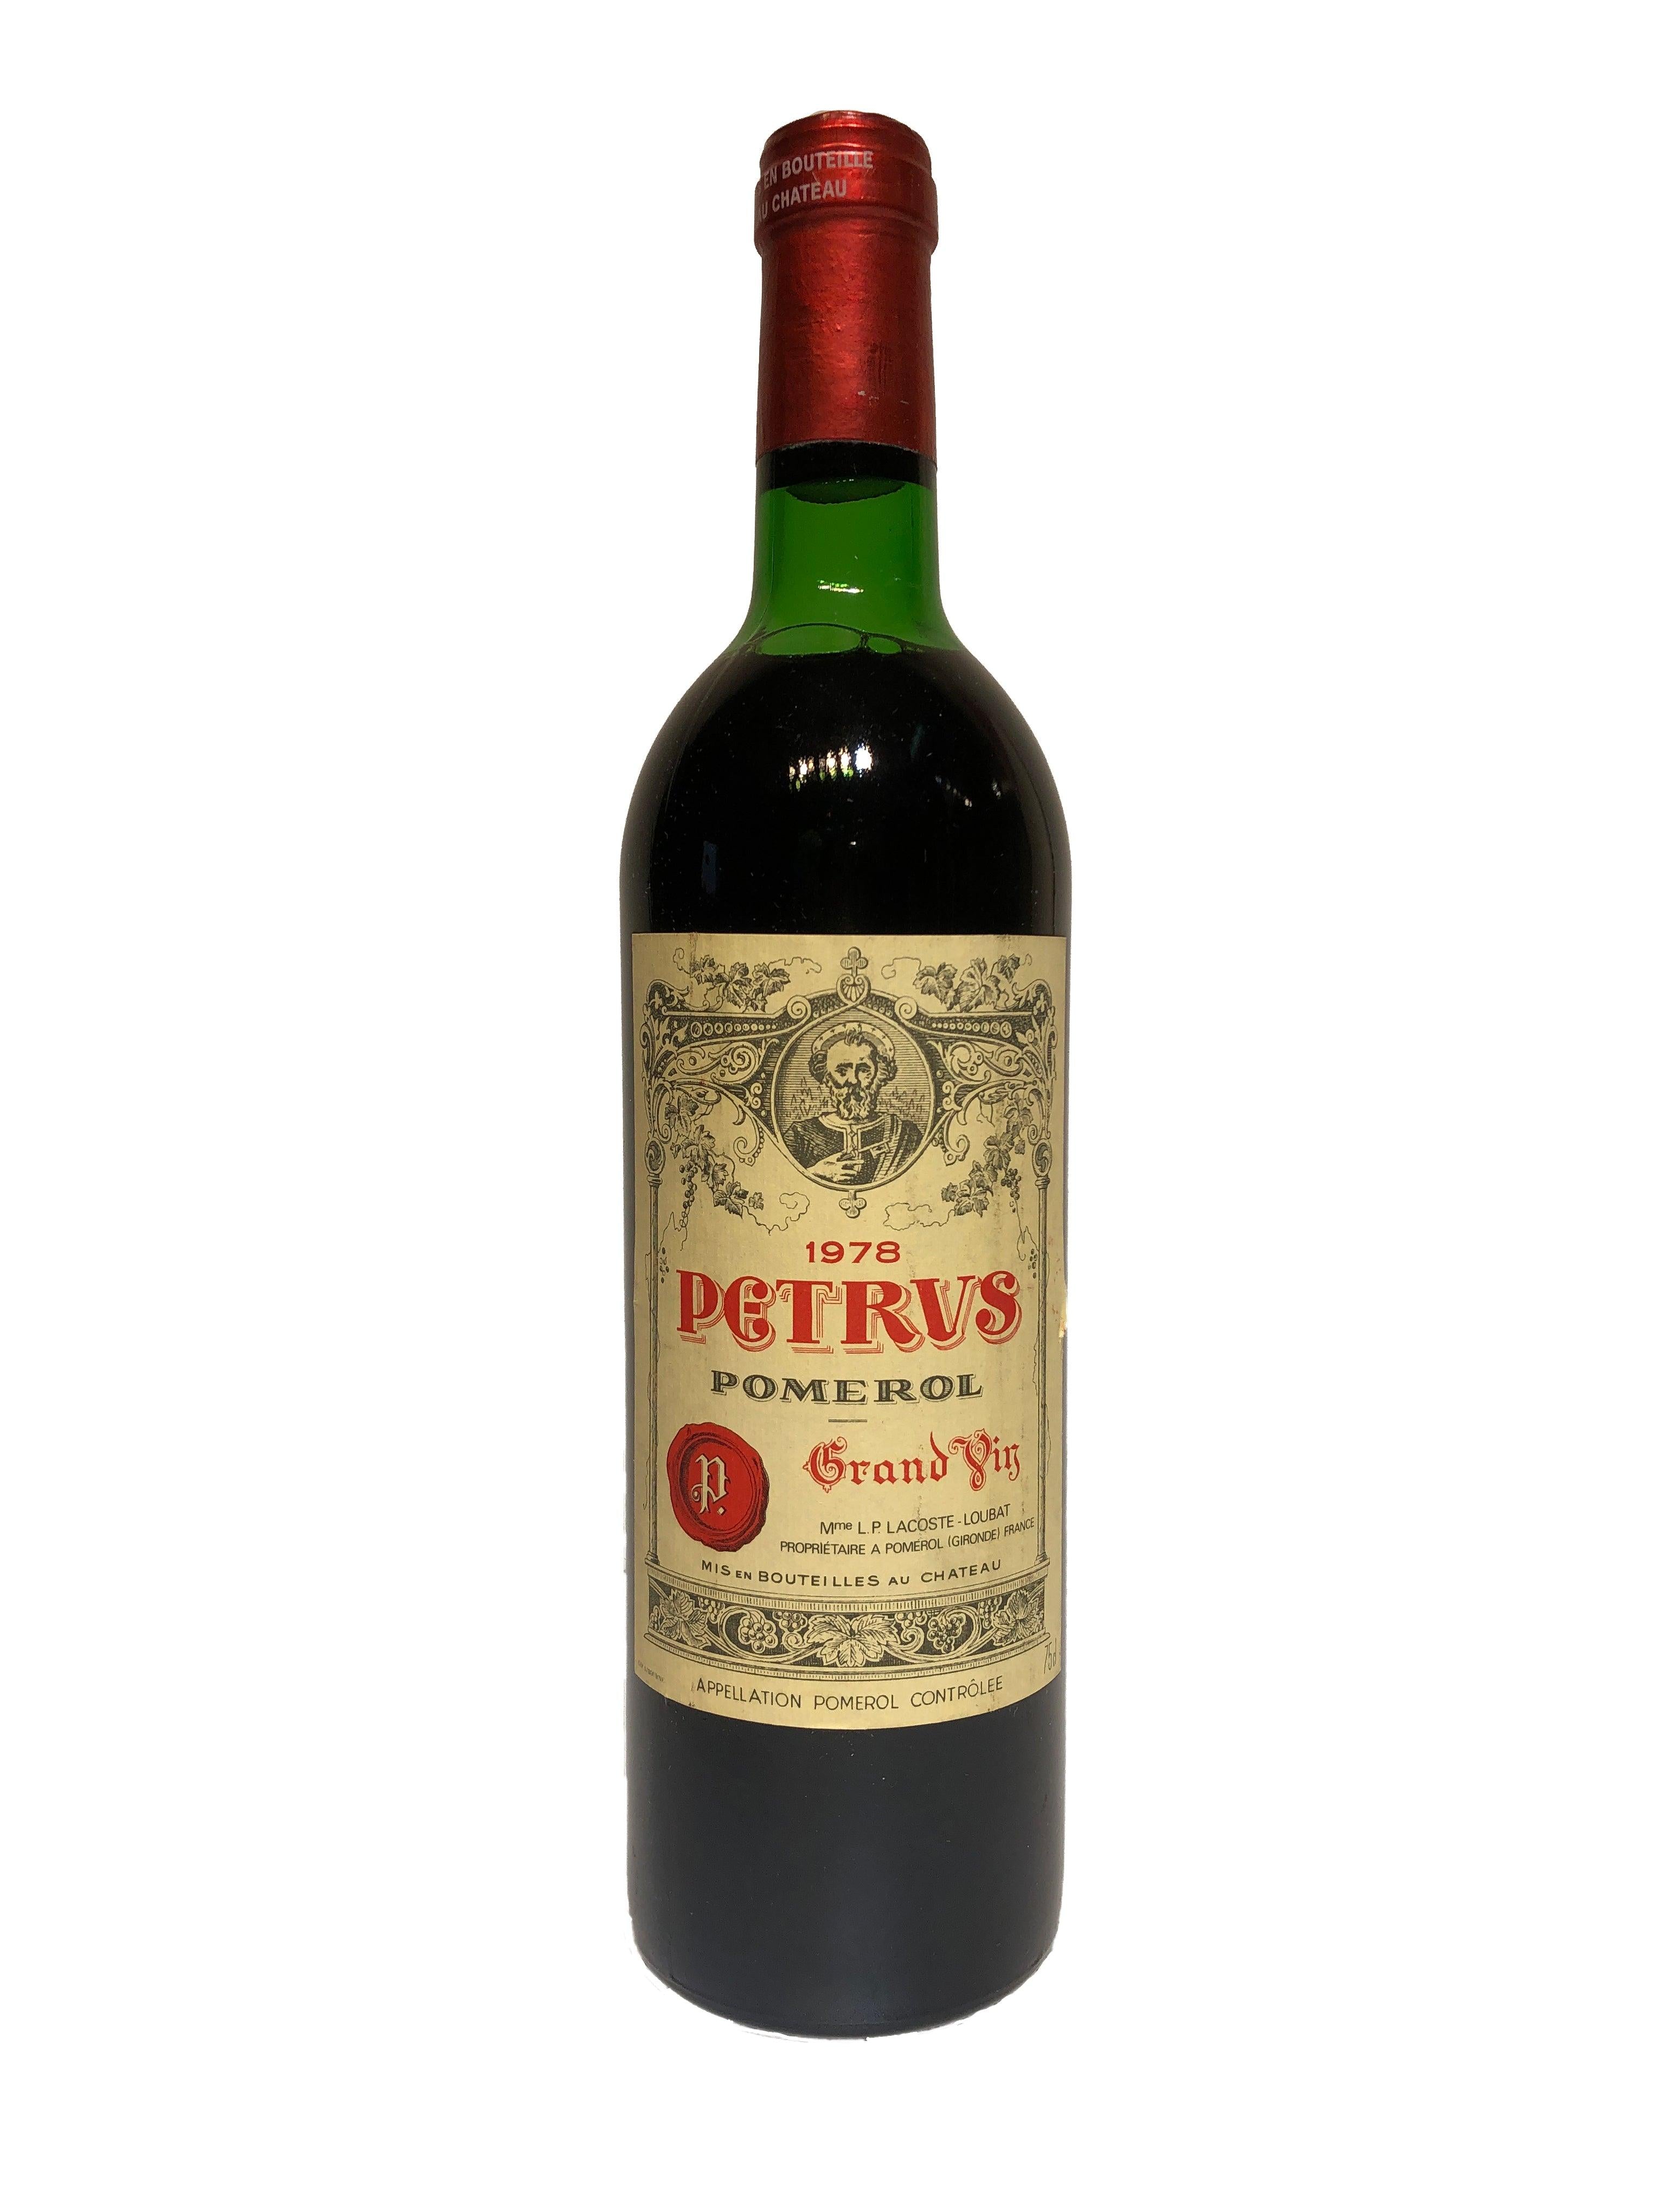 Château Petrus 1978 (RP89) - Double S Wine 